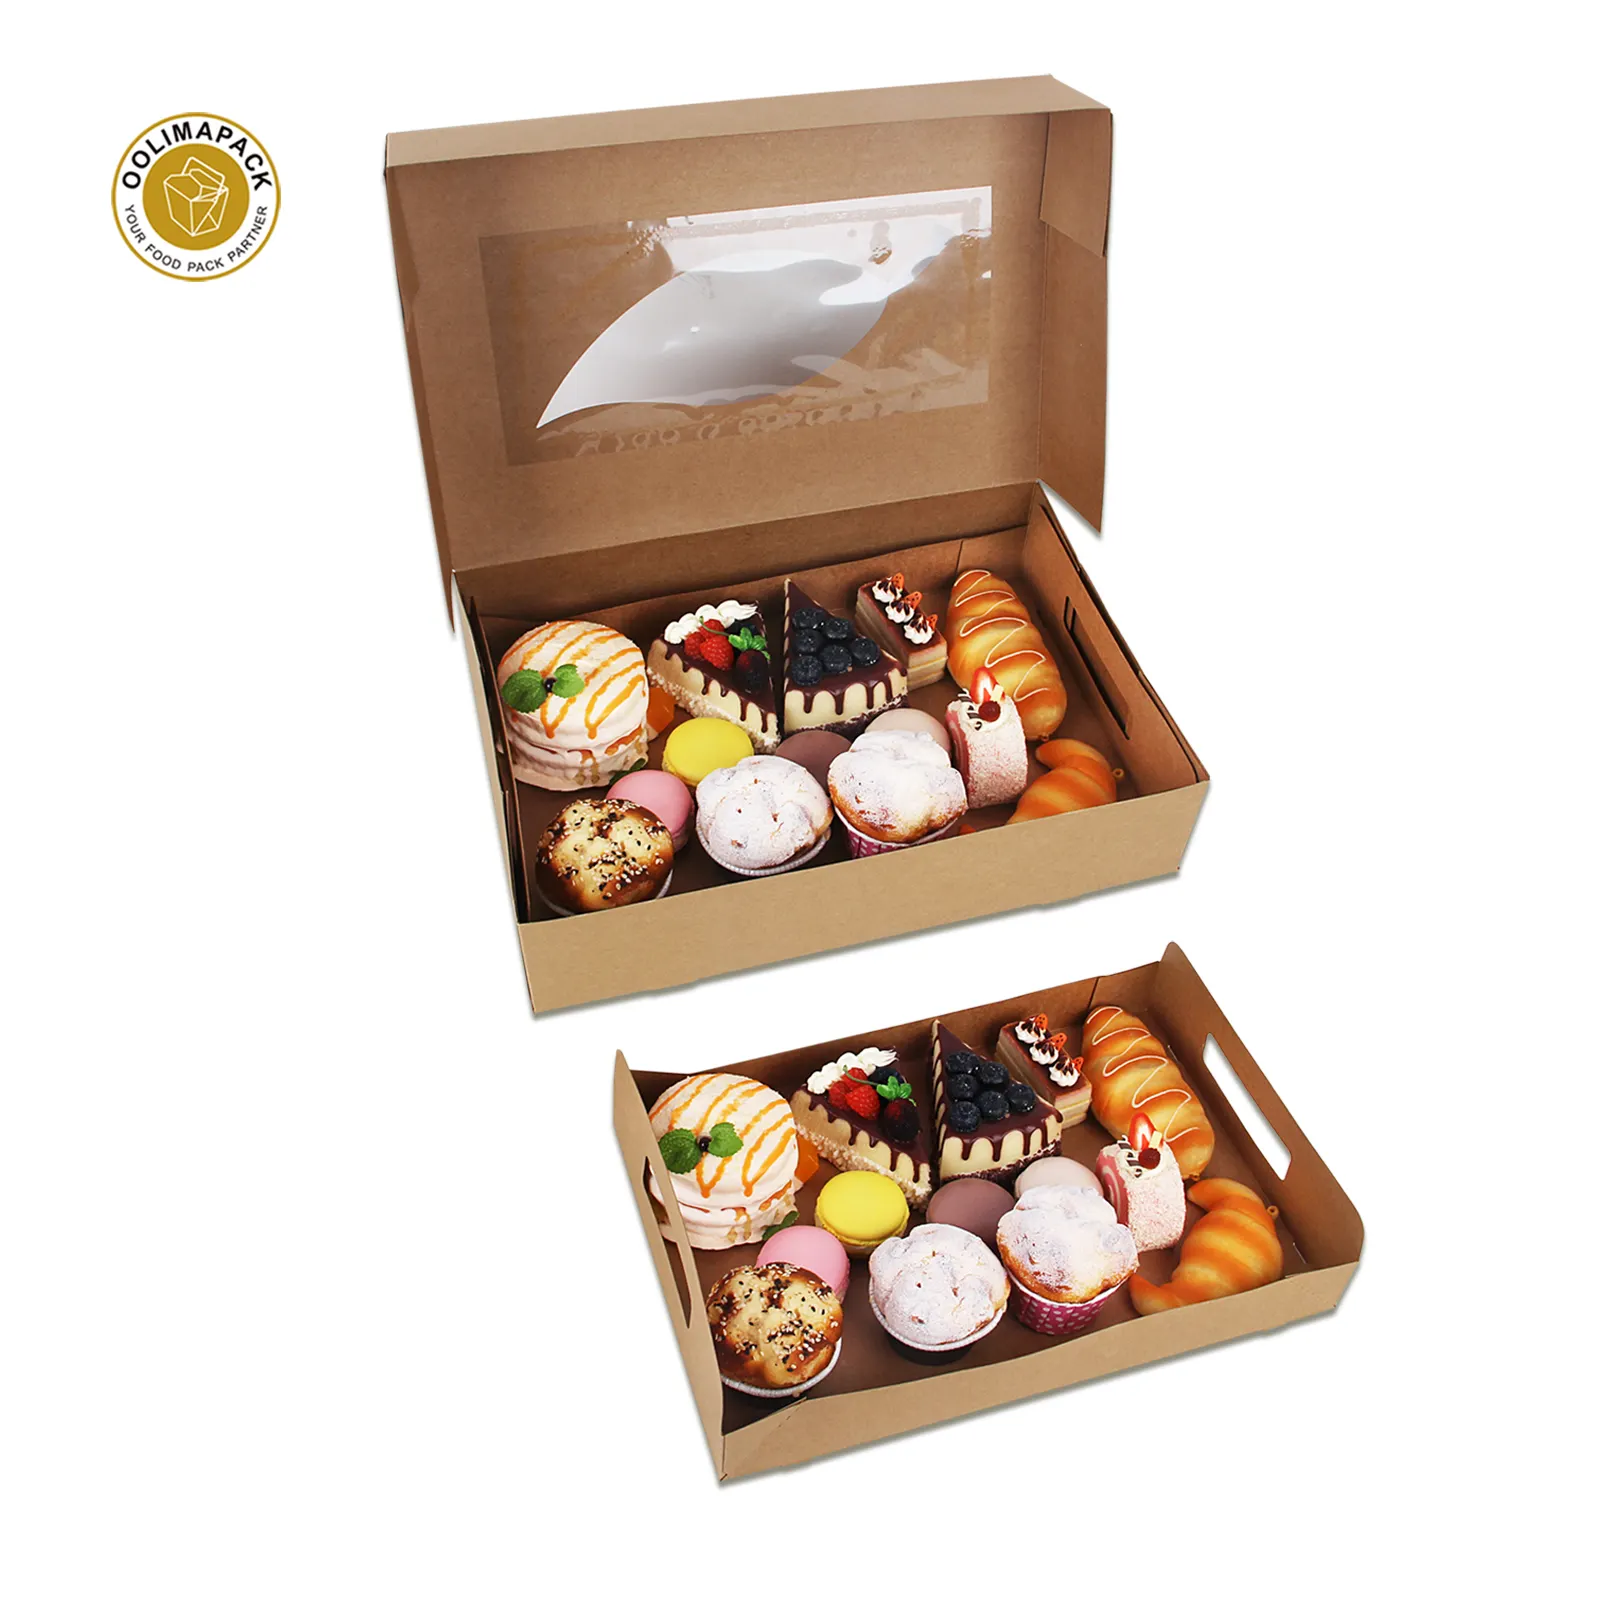 Caja de catering OOLIMAPACK de alta calidad para alimentos, cajas de papel Kraft con tapa transparente, caja de pastoreo con letras